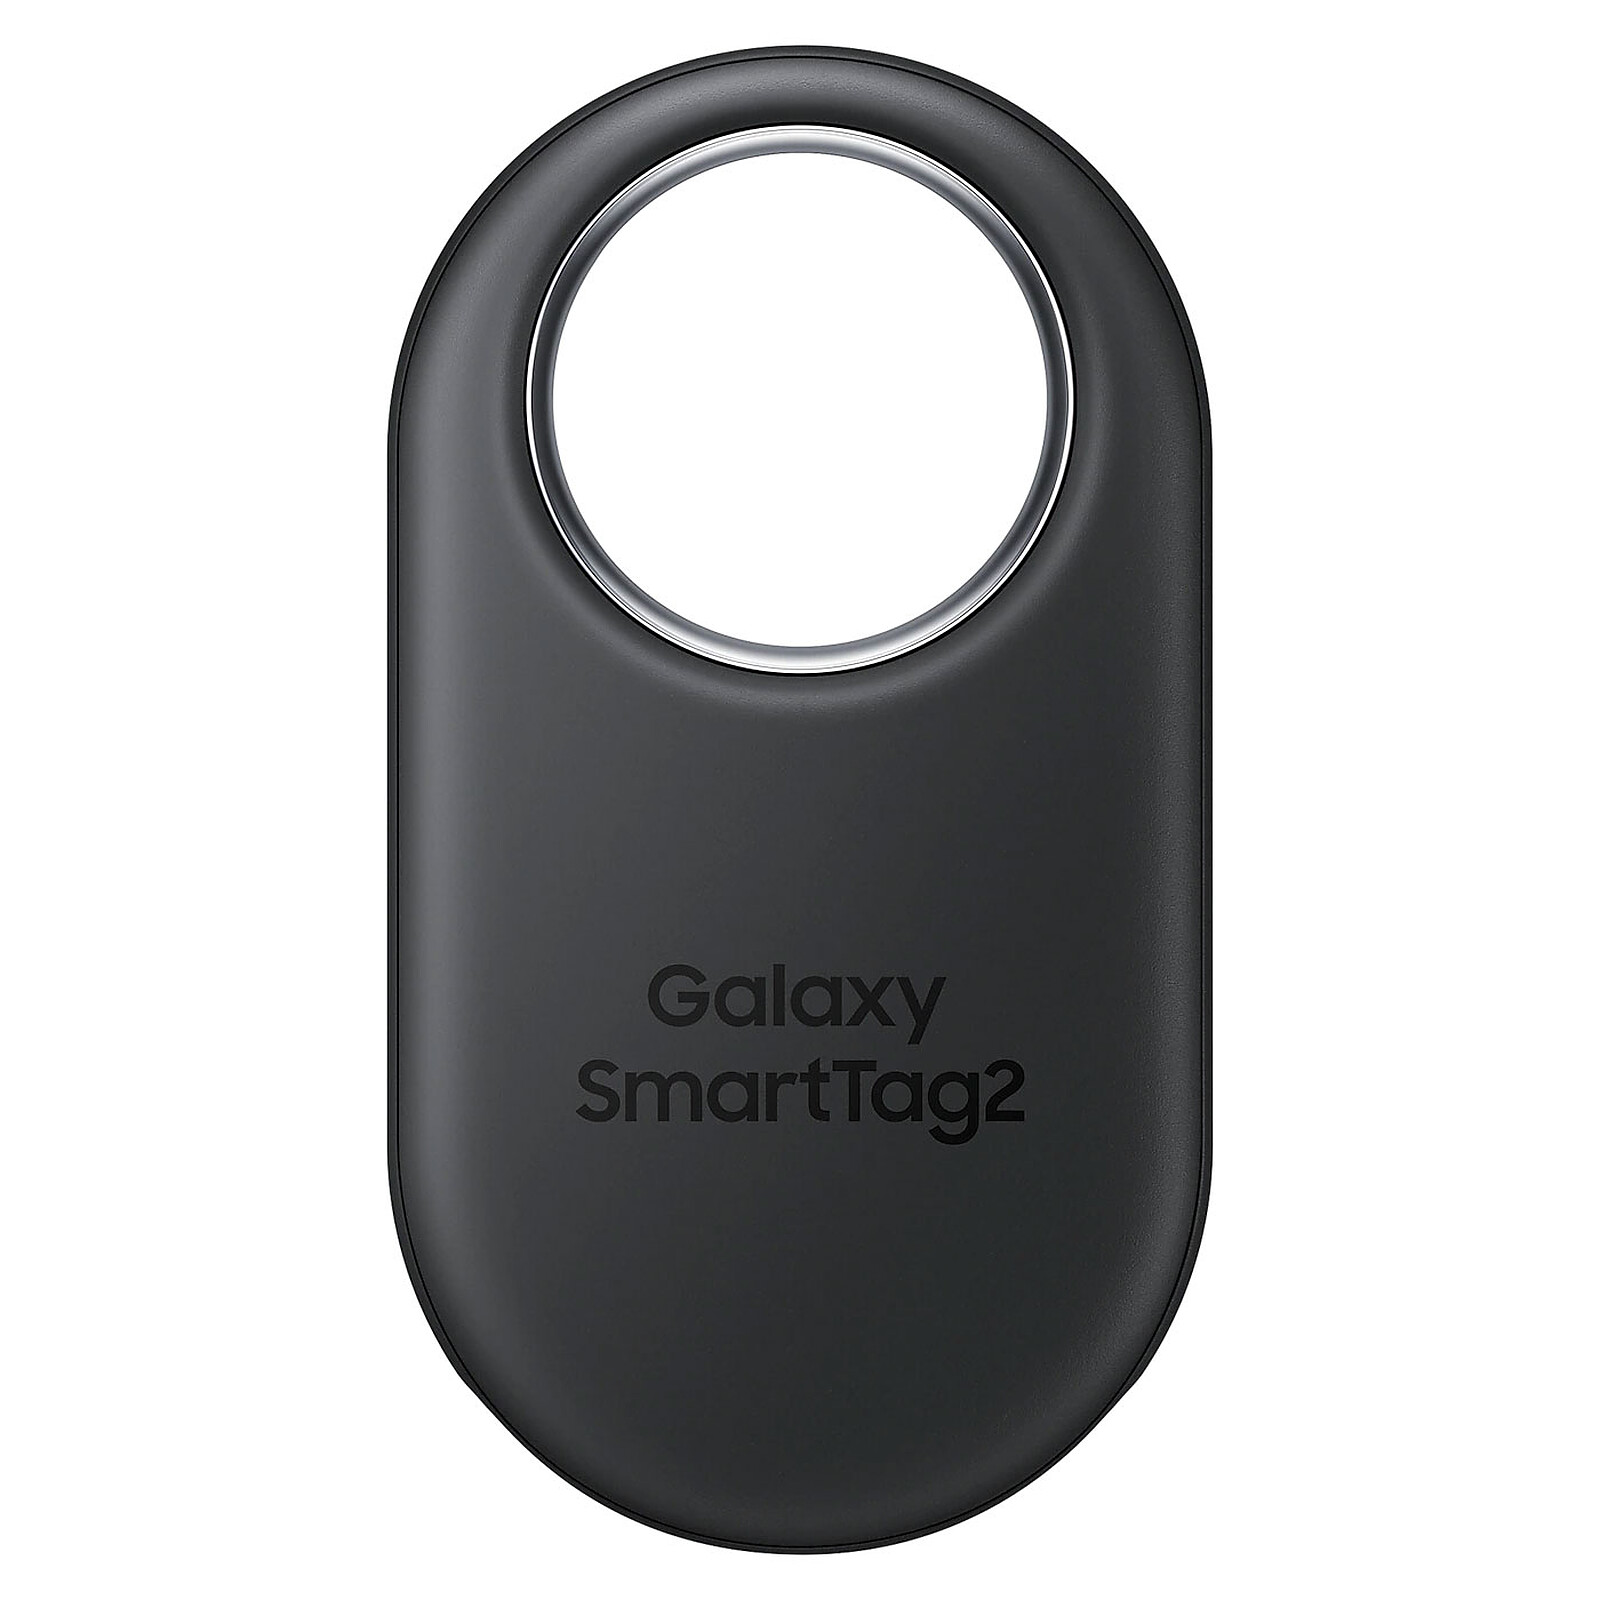 TEST - Samsung Galaxy SmartTag, est-ce vraiment aussi utile